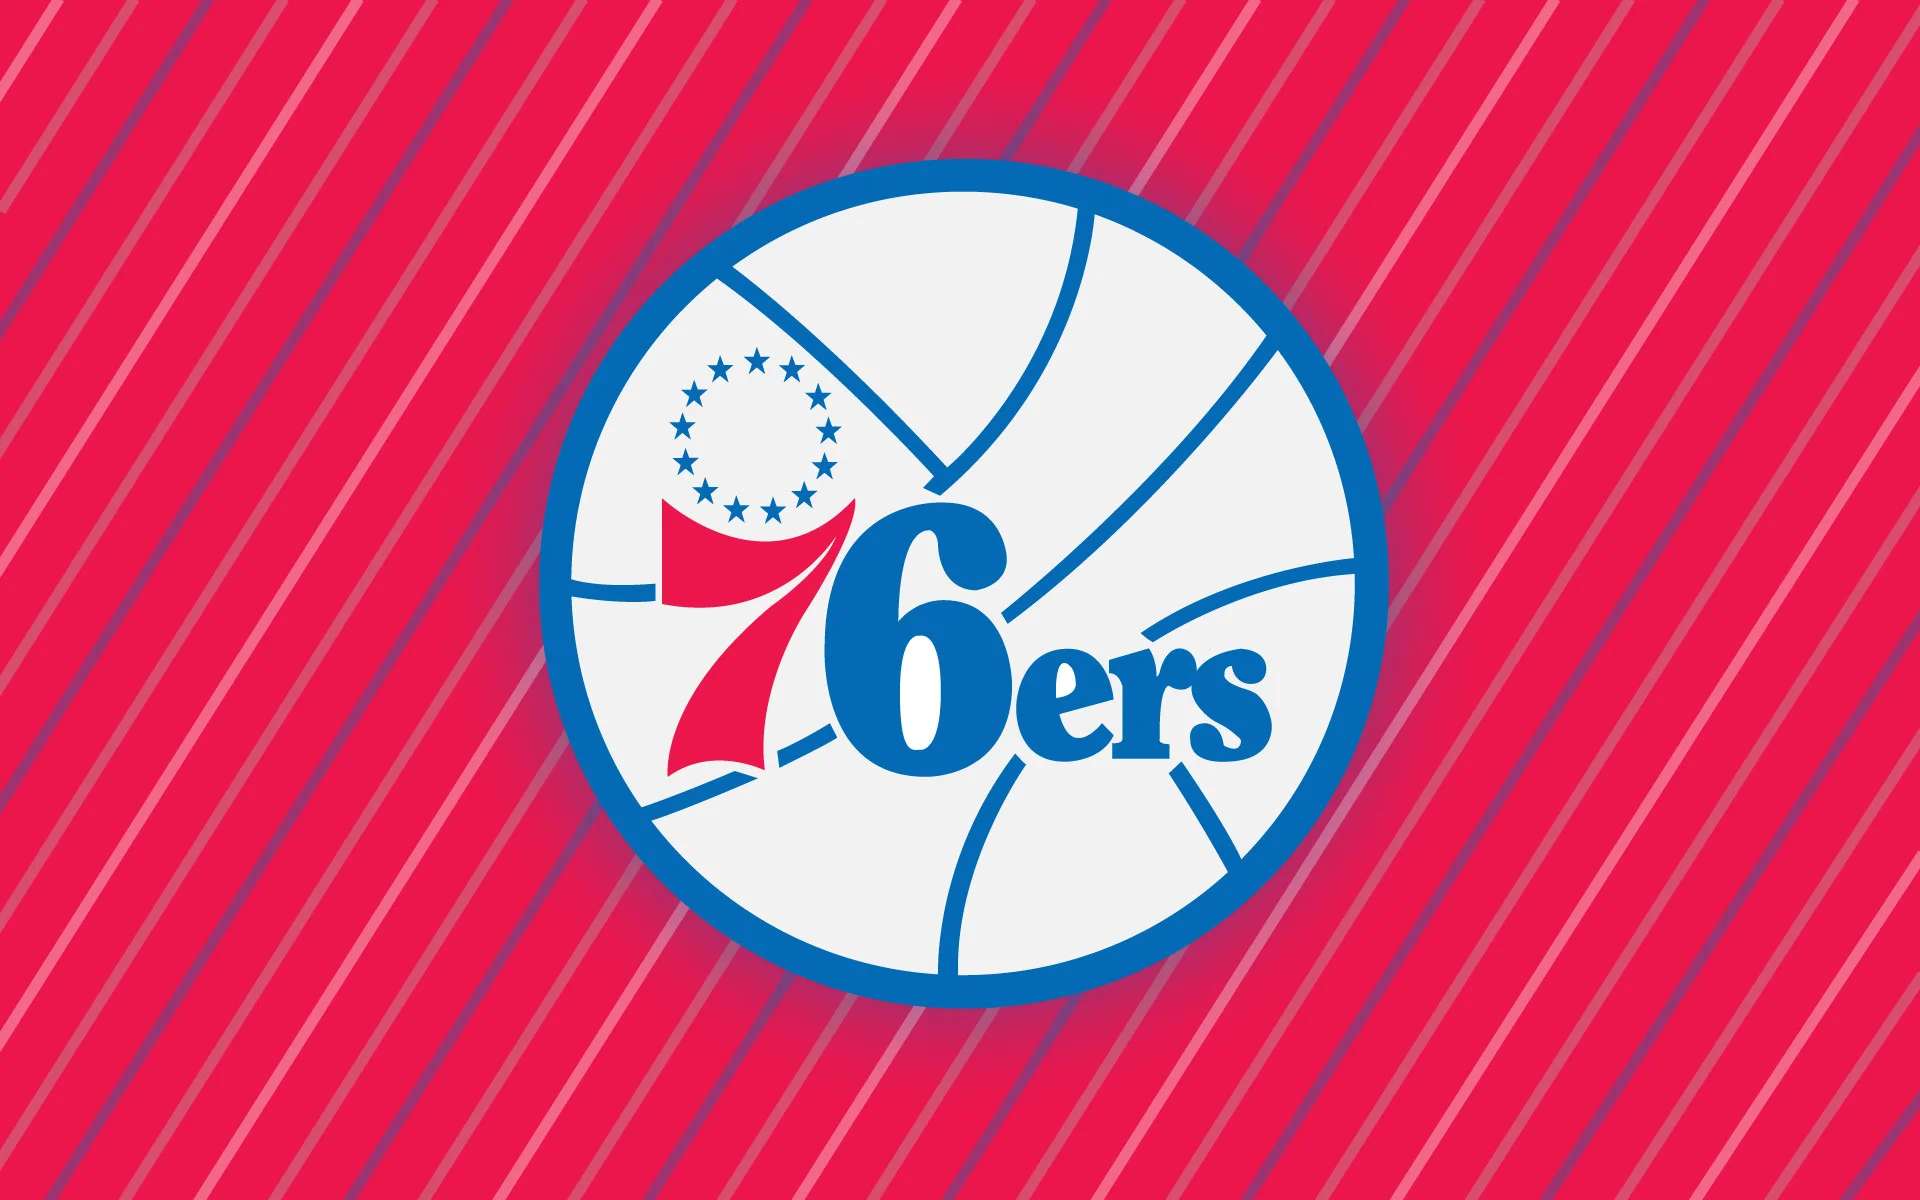 Explore Basketball Association, Team Logo, and more